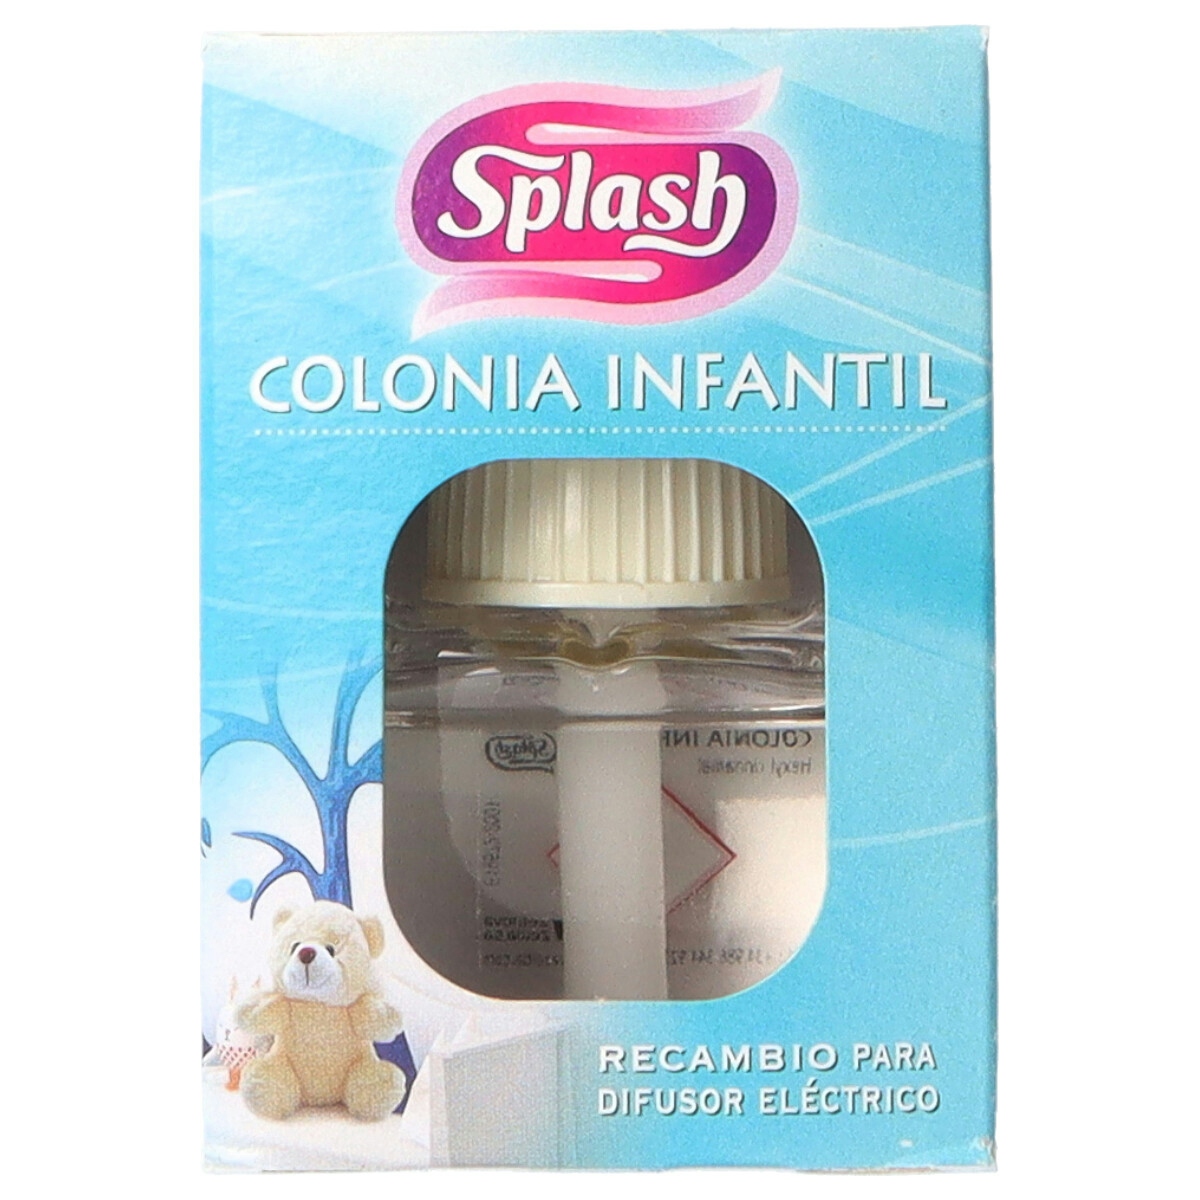 Ambientador eléctrico recambio colonia infantil Splash 25 ml